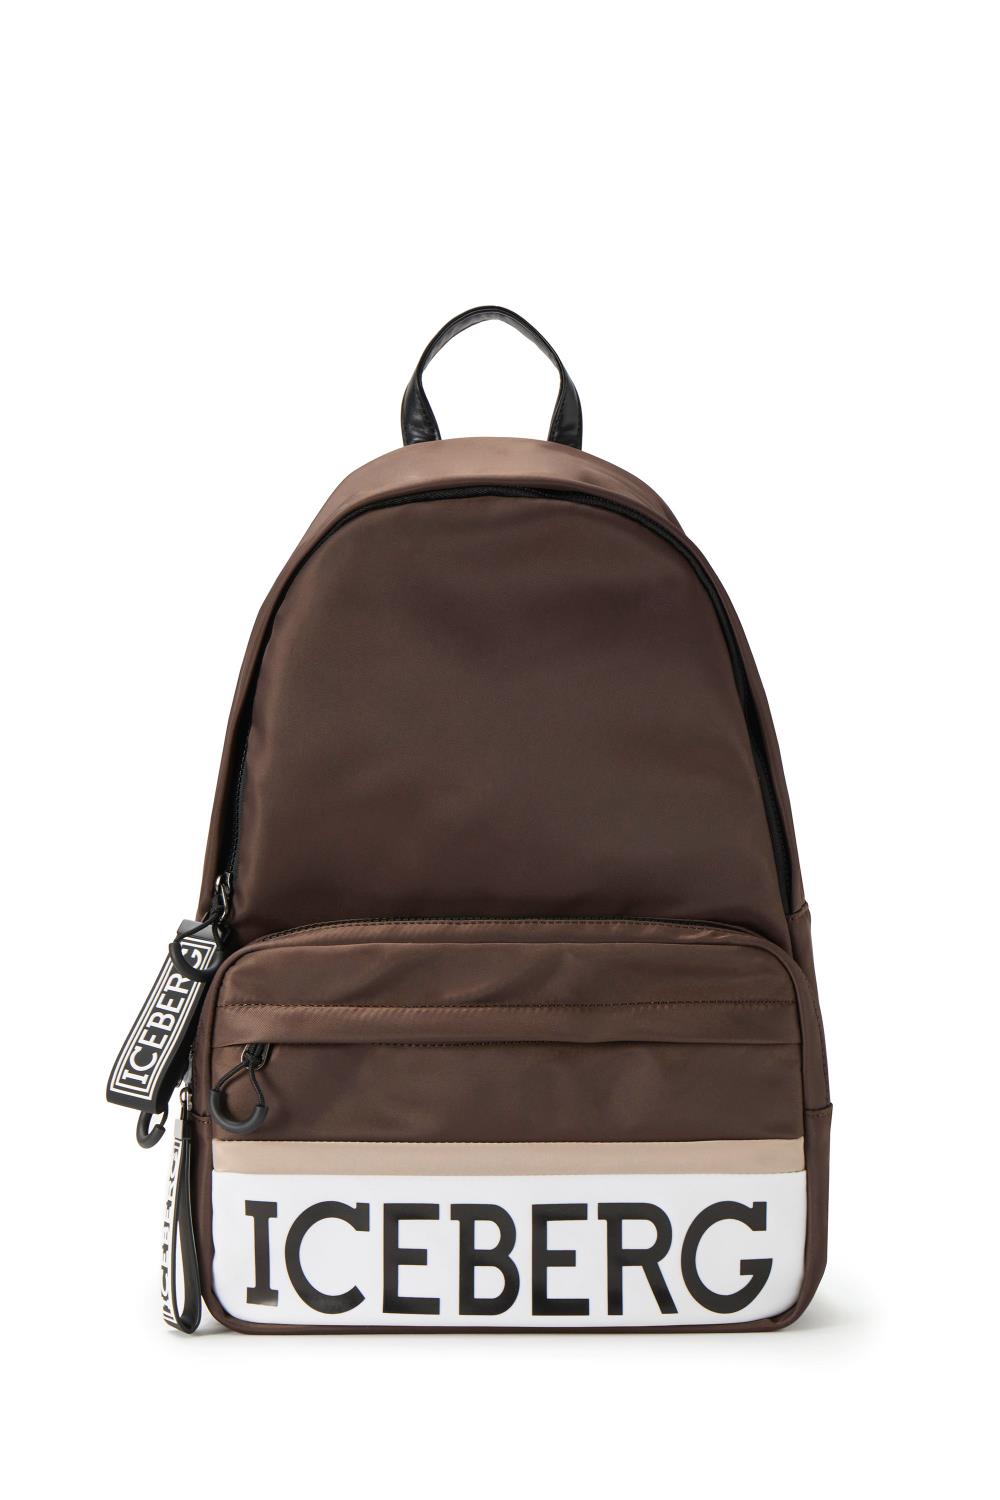 Bedoel Meerdere ijzer Backpack with institutional logo | Iceberg